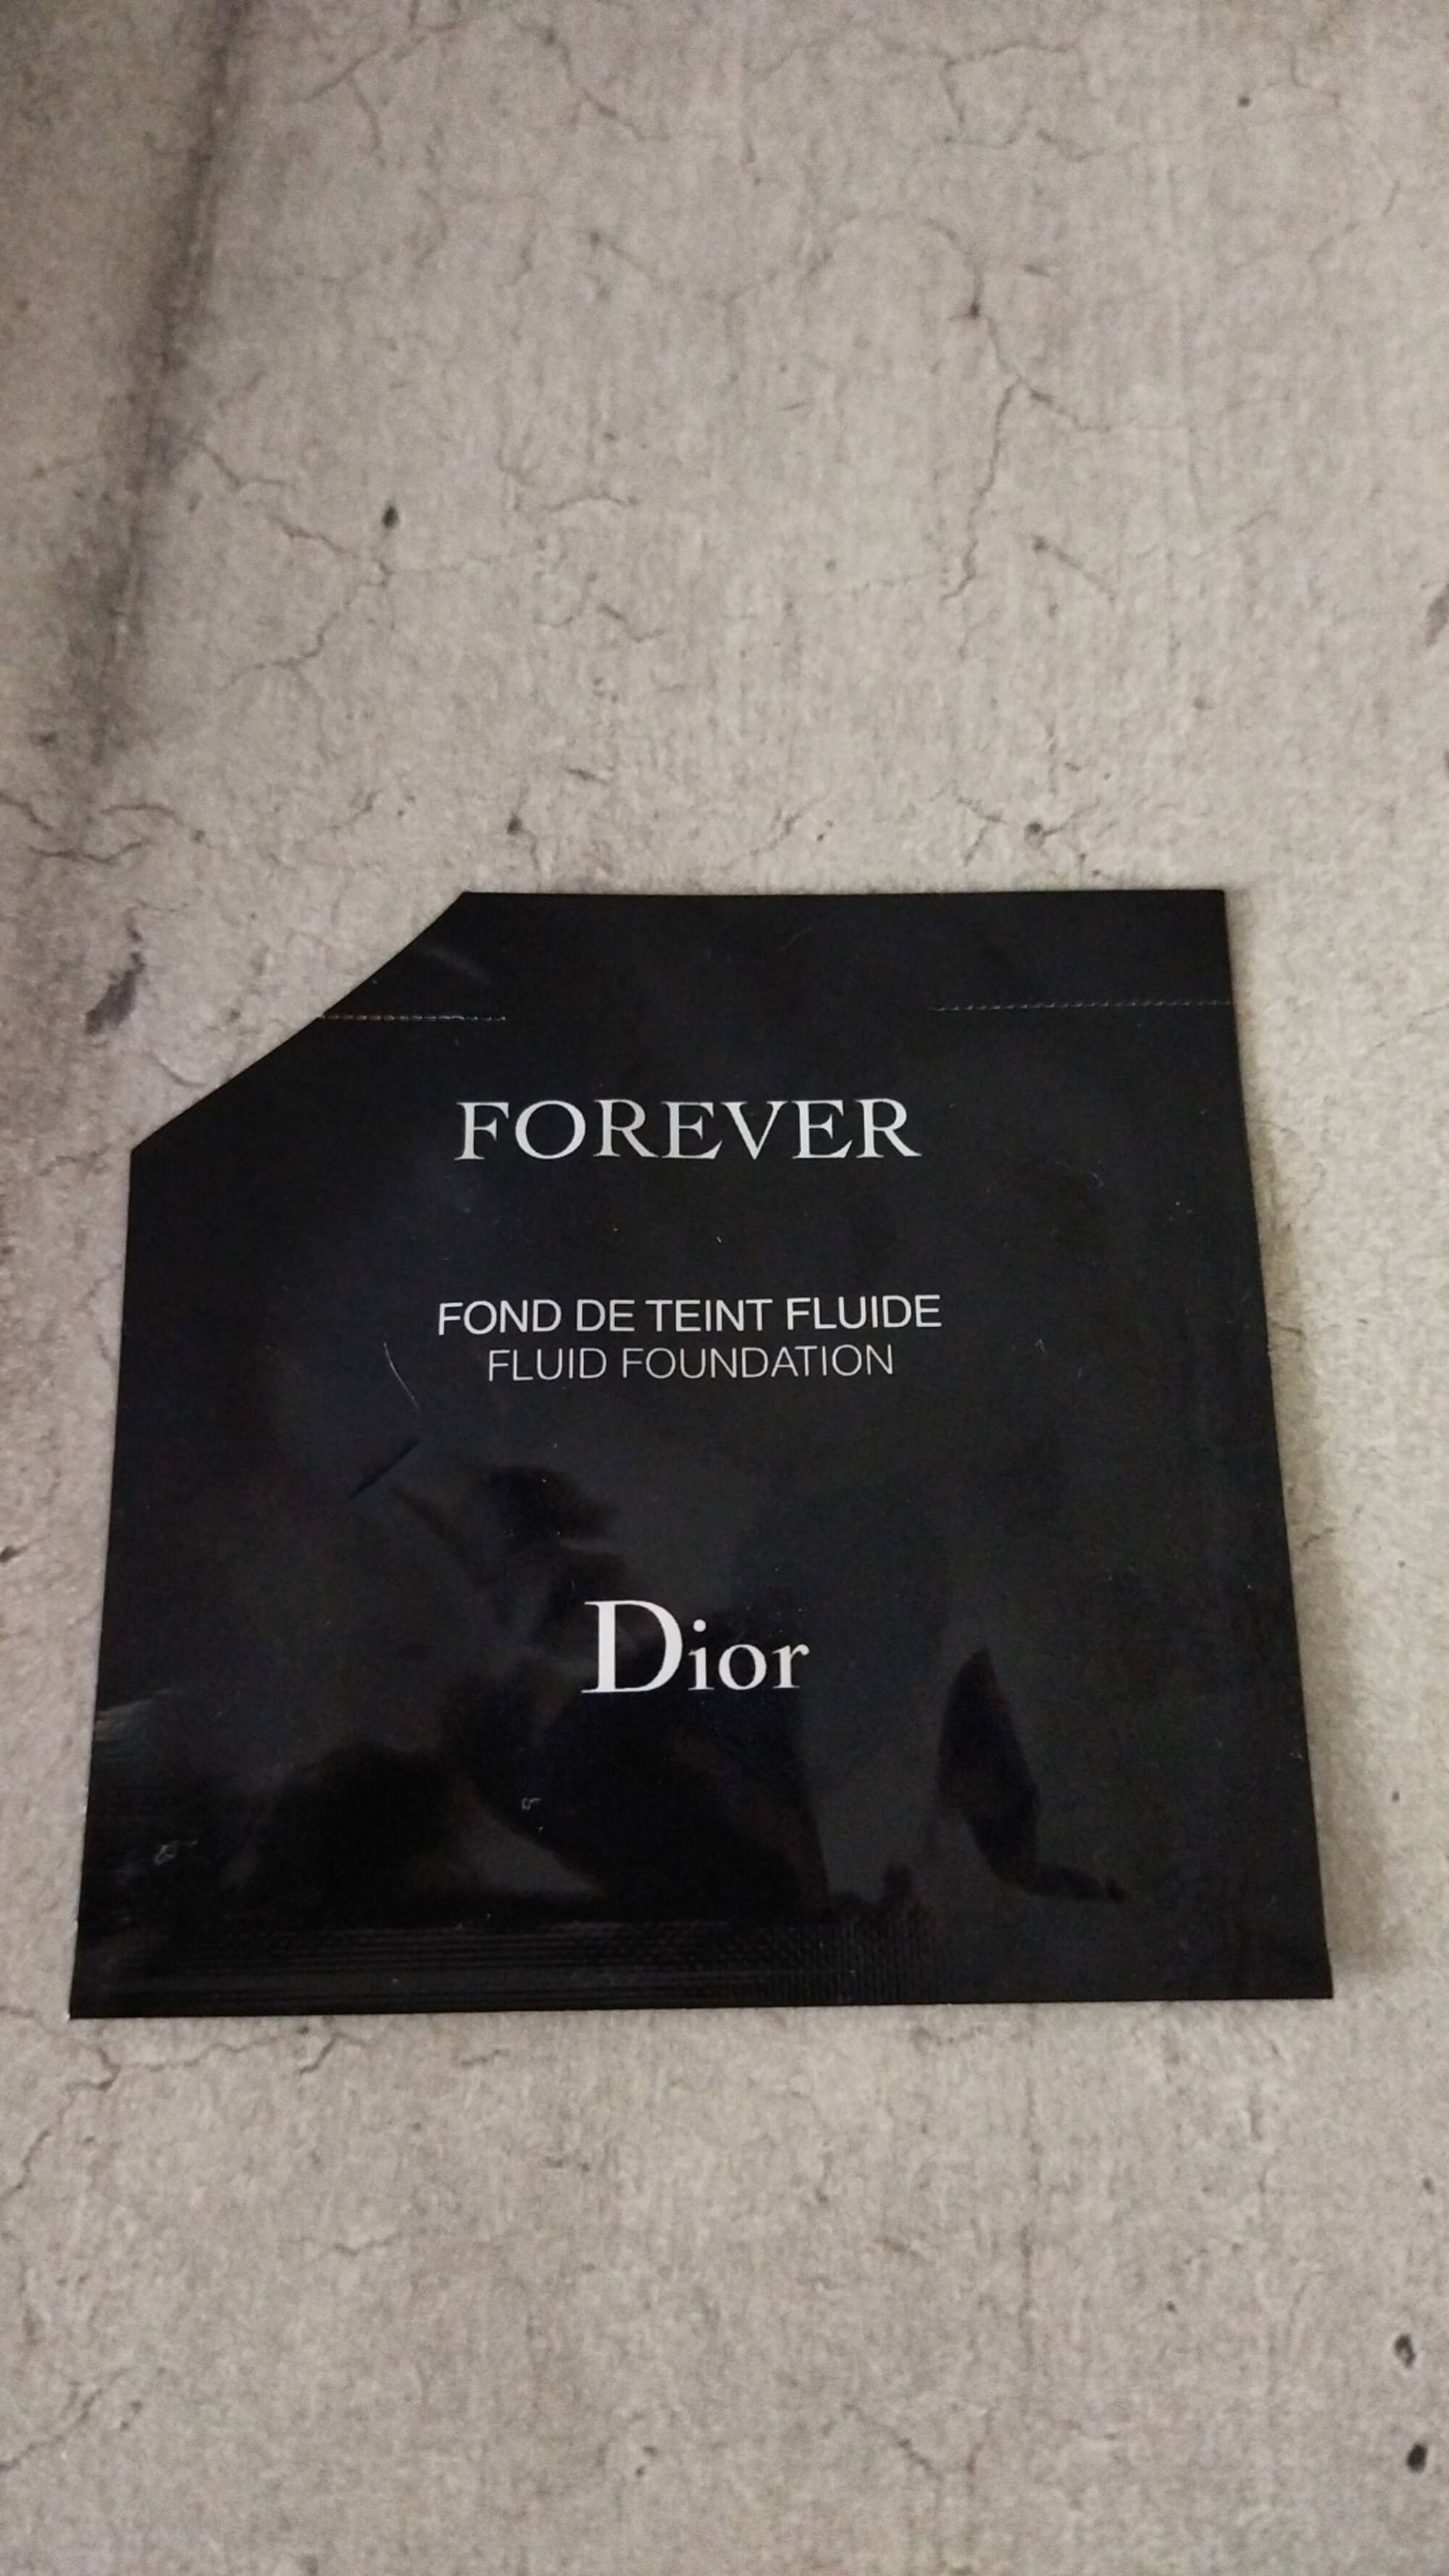 DIOR - Forever - Fond de teint fluide